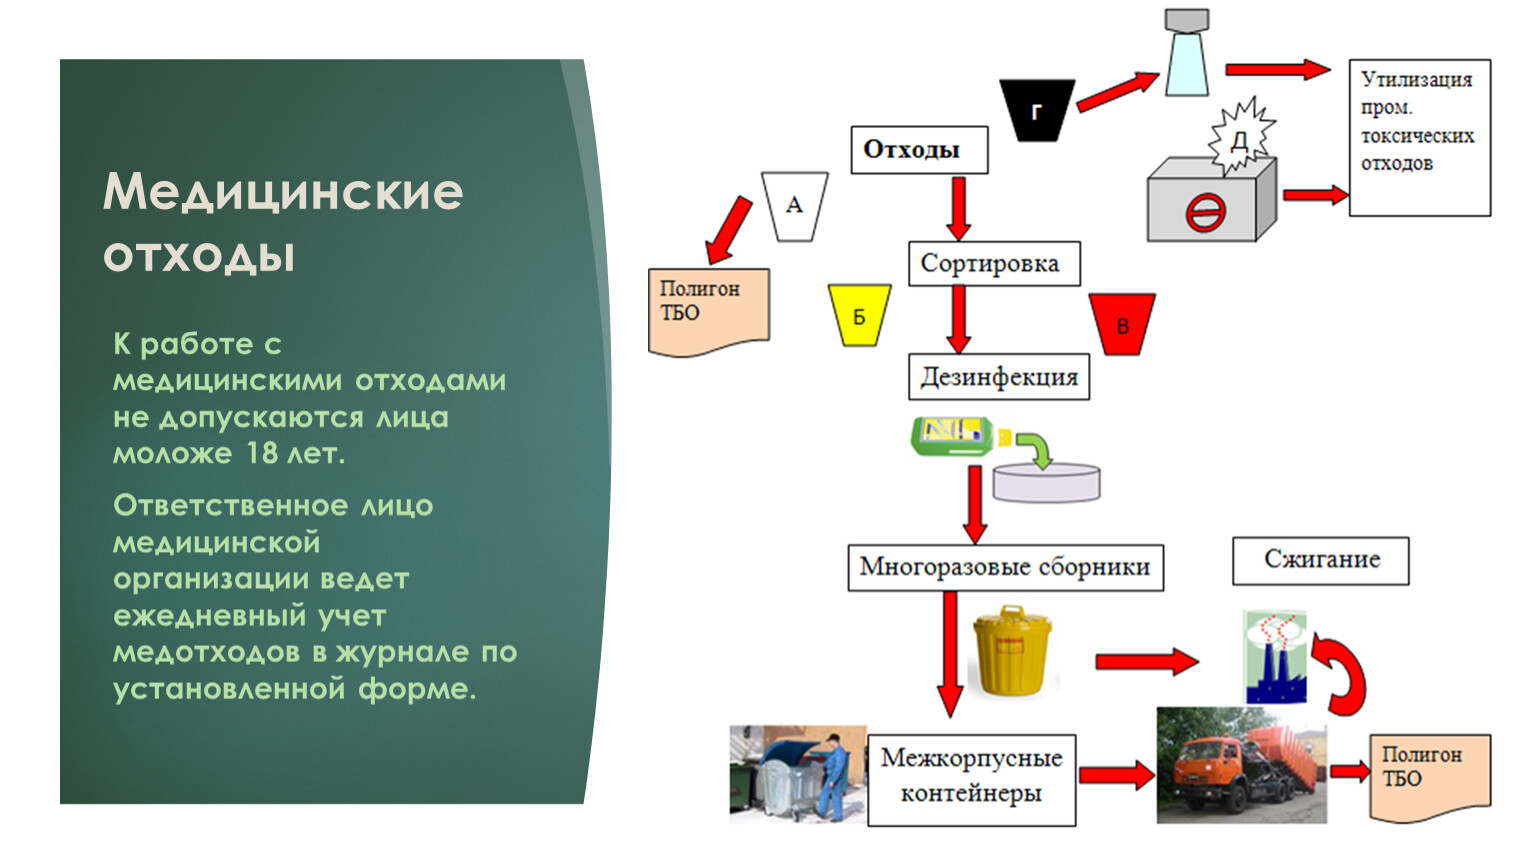 Алгоритм отходы класс б. Схема утилизации медицинских отходов отходов. Схема утилизации медицинских отходов класса в. Медицинские отходы схема утилизации медицинских отходов. Схема утилизации опасных медицинских отходов.